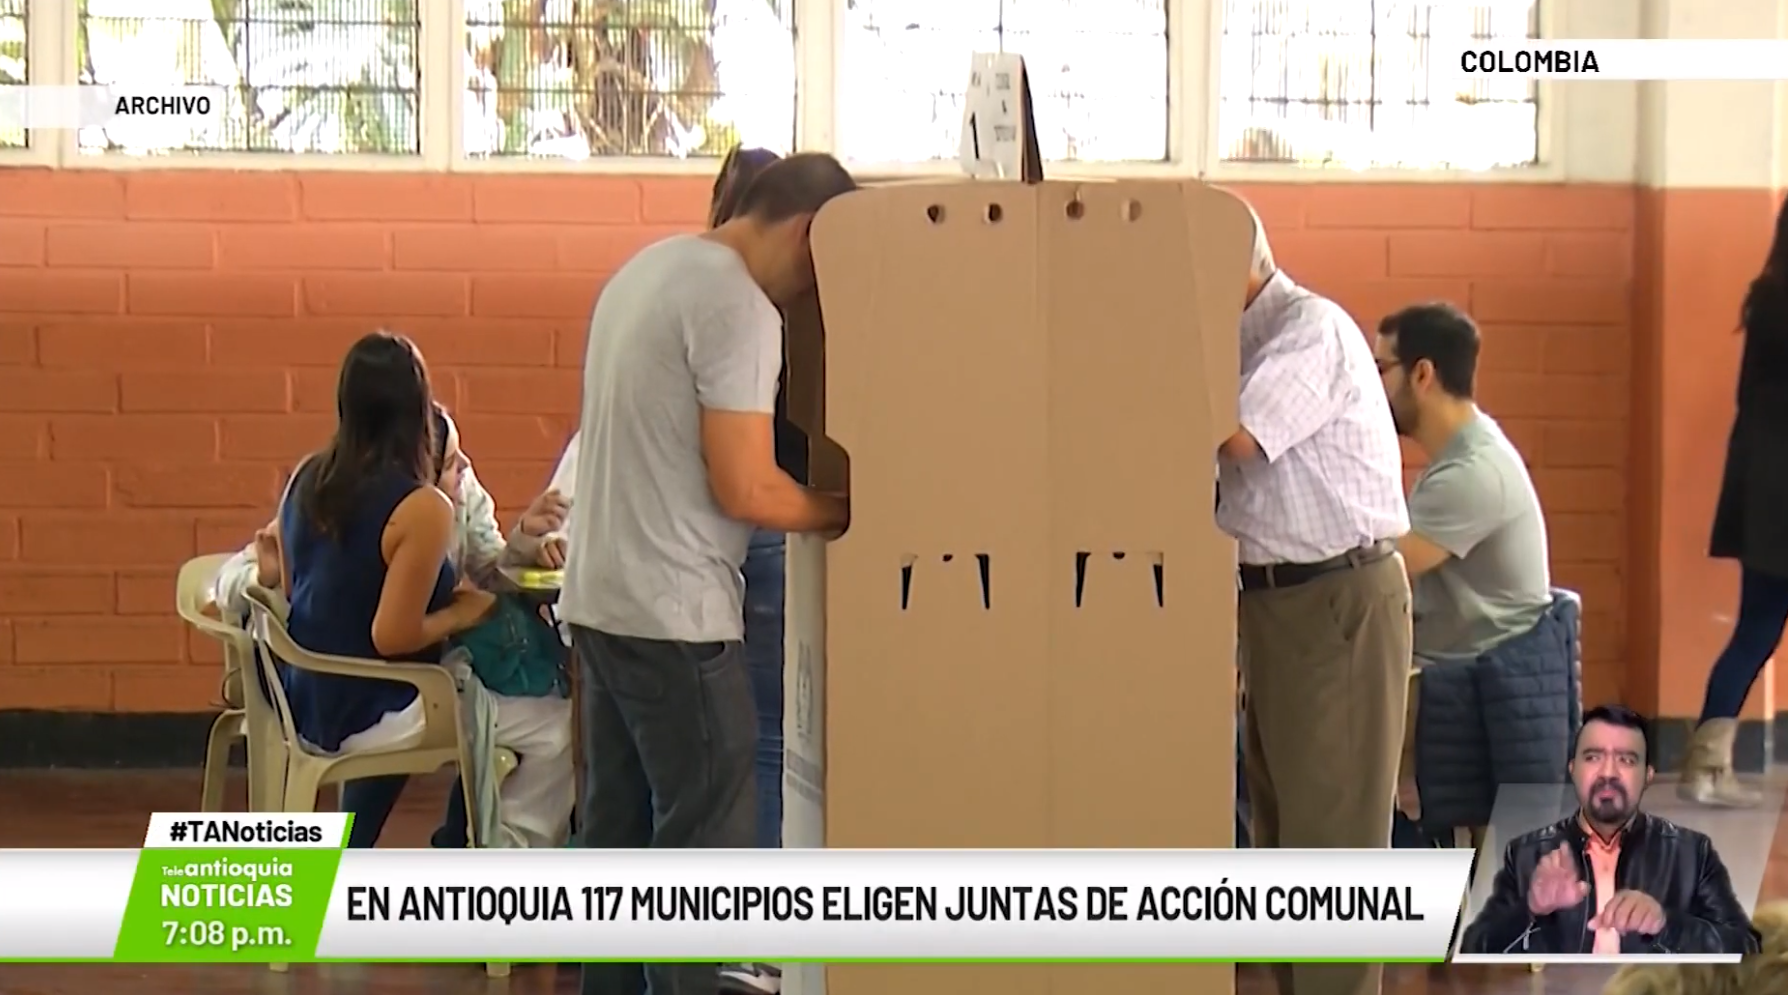 En Antioquia 117 municipios eligen juntas de acción comunal